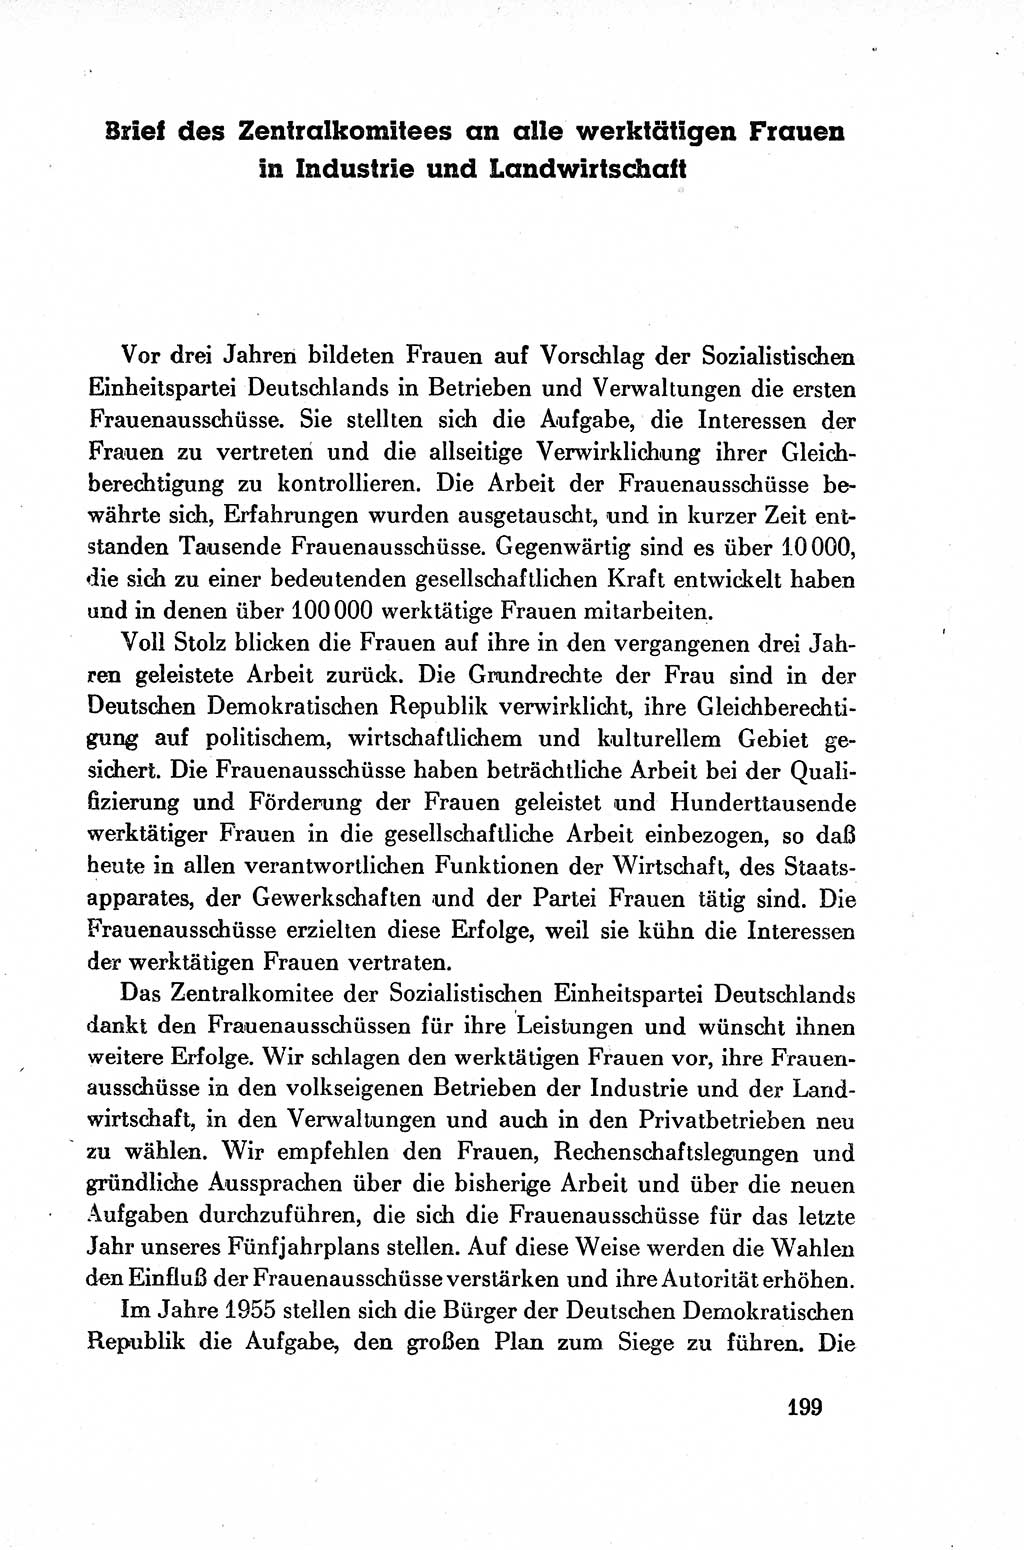 Dokumente der Sozialistischen Einheitspartei Deutschlands (SED) [Deutsche Demokratische Republik (DDR)] 1954-1955, Seite 199 (Dok. SED DDR 1954-1955, S. 199)